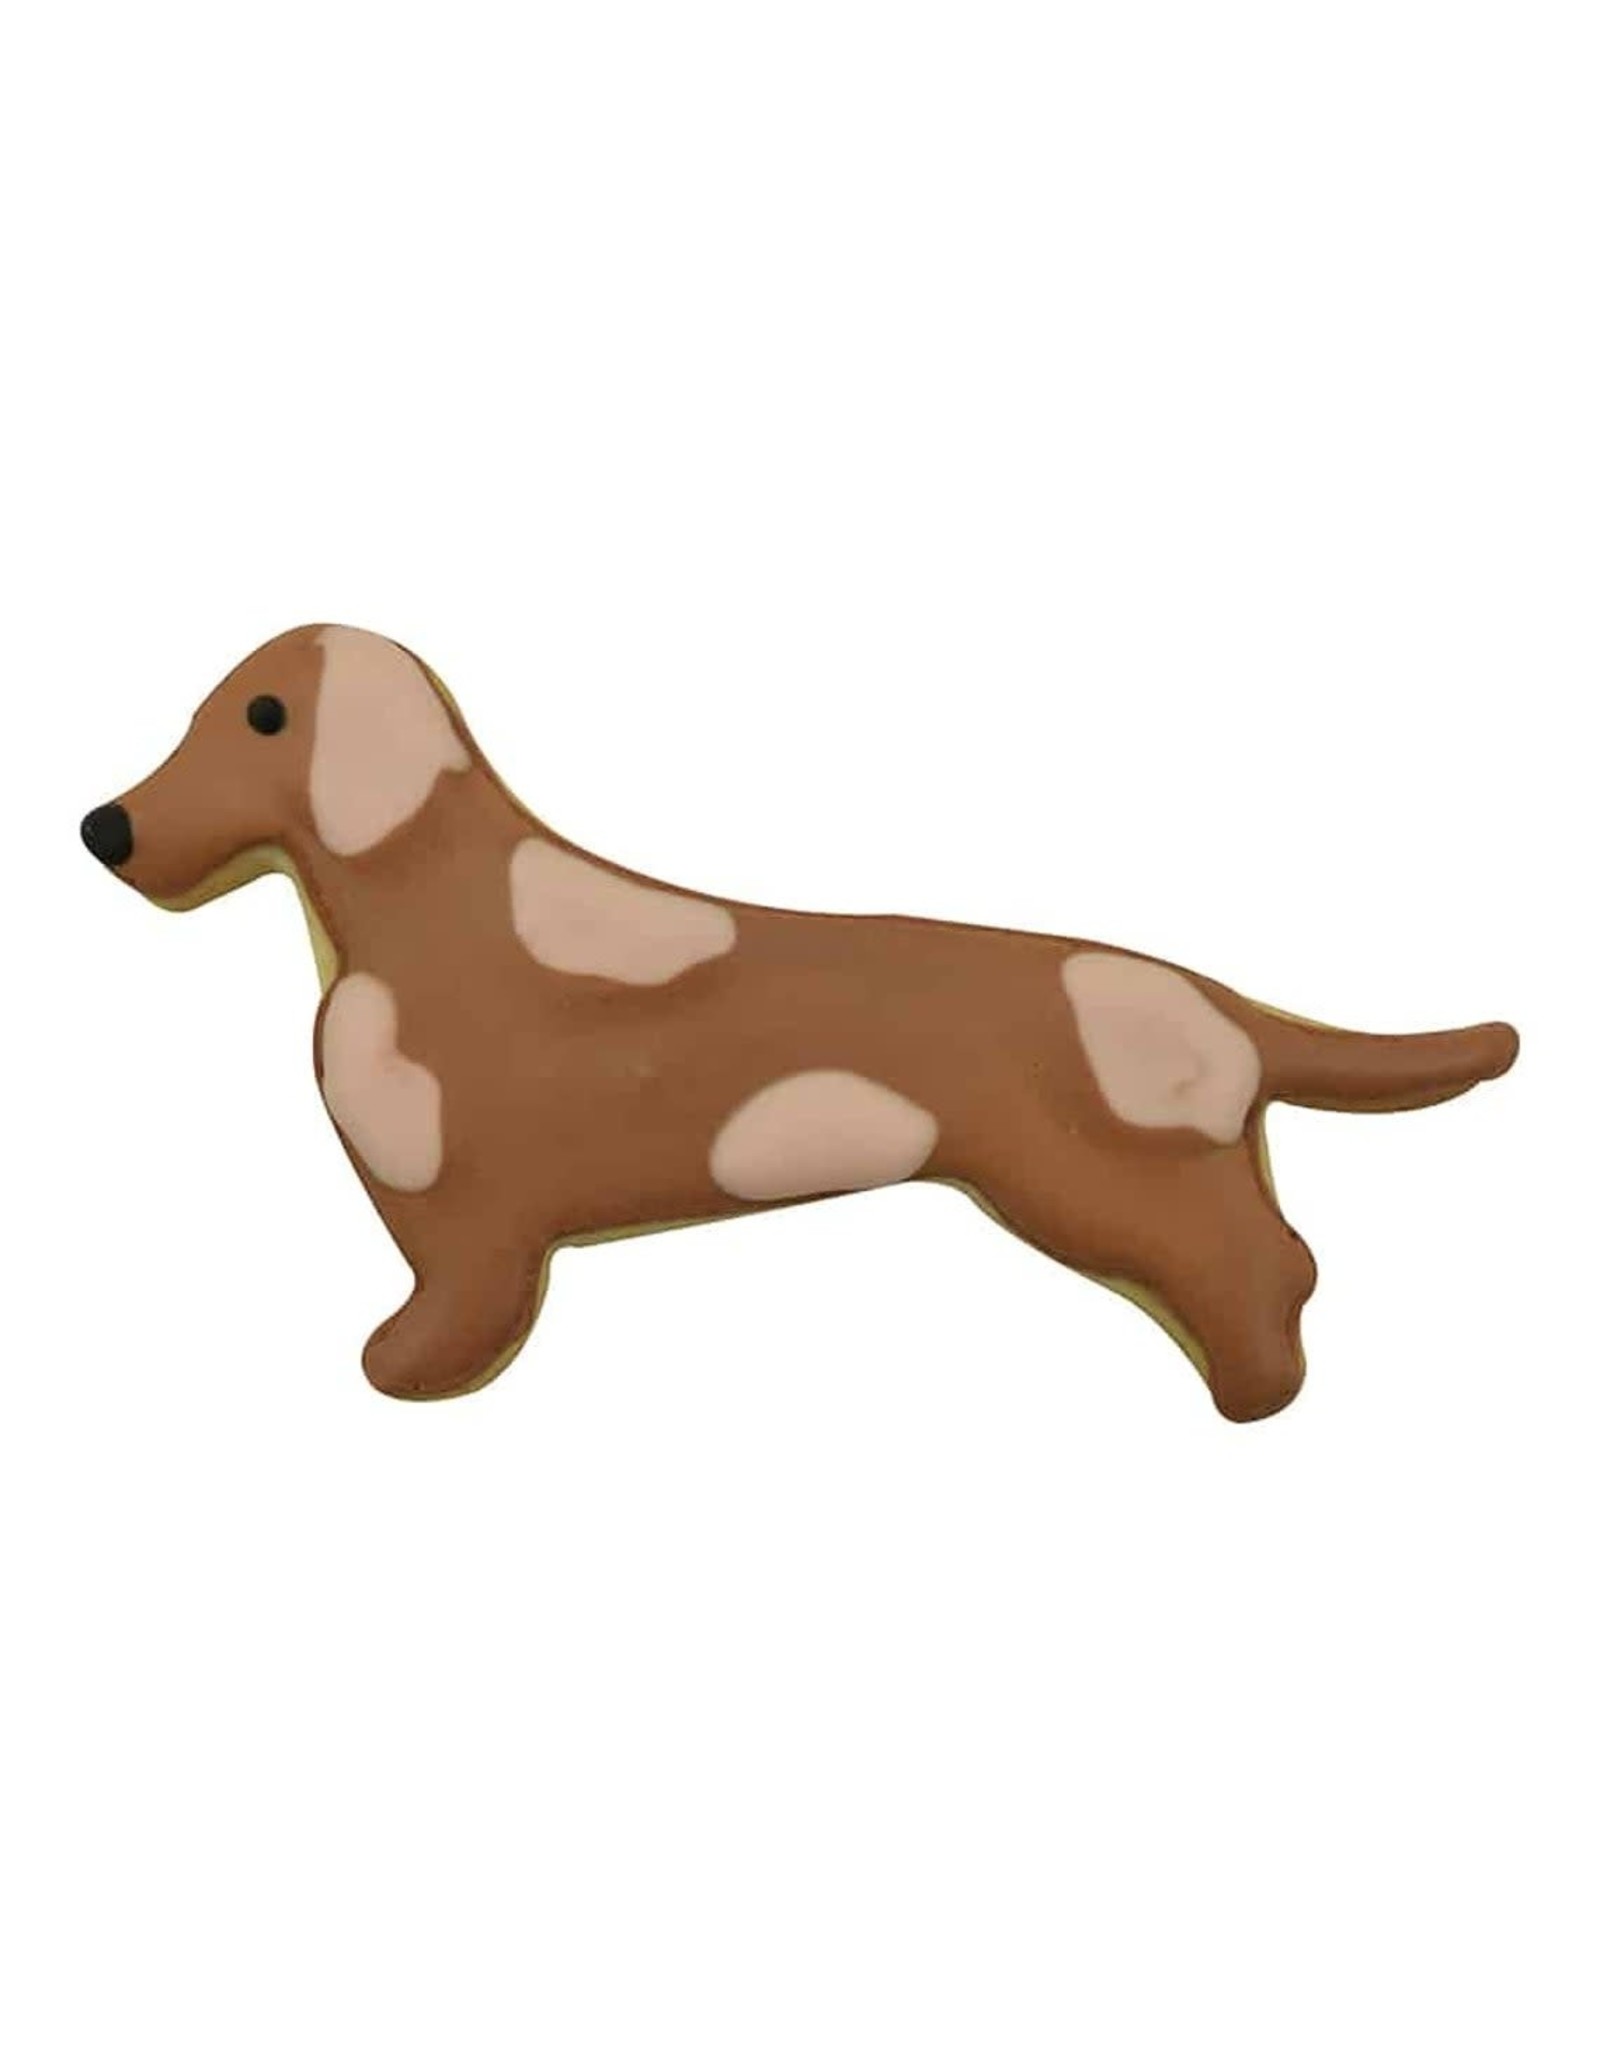 https://cdn.shoplightspeed.com/shops/635781/files/35648591/1600x2048x2/5-dachshund-cookie-cutter.jpg